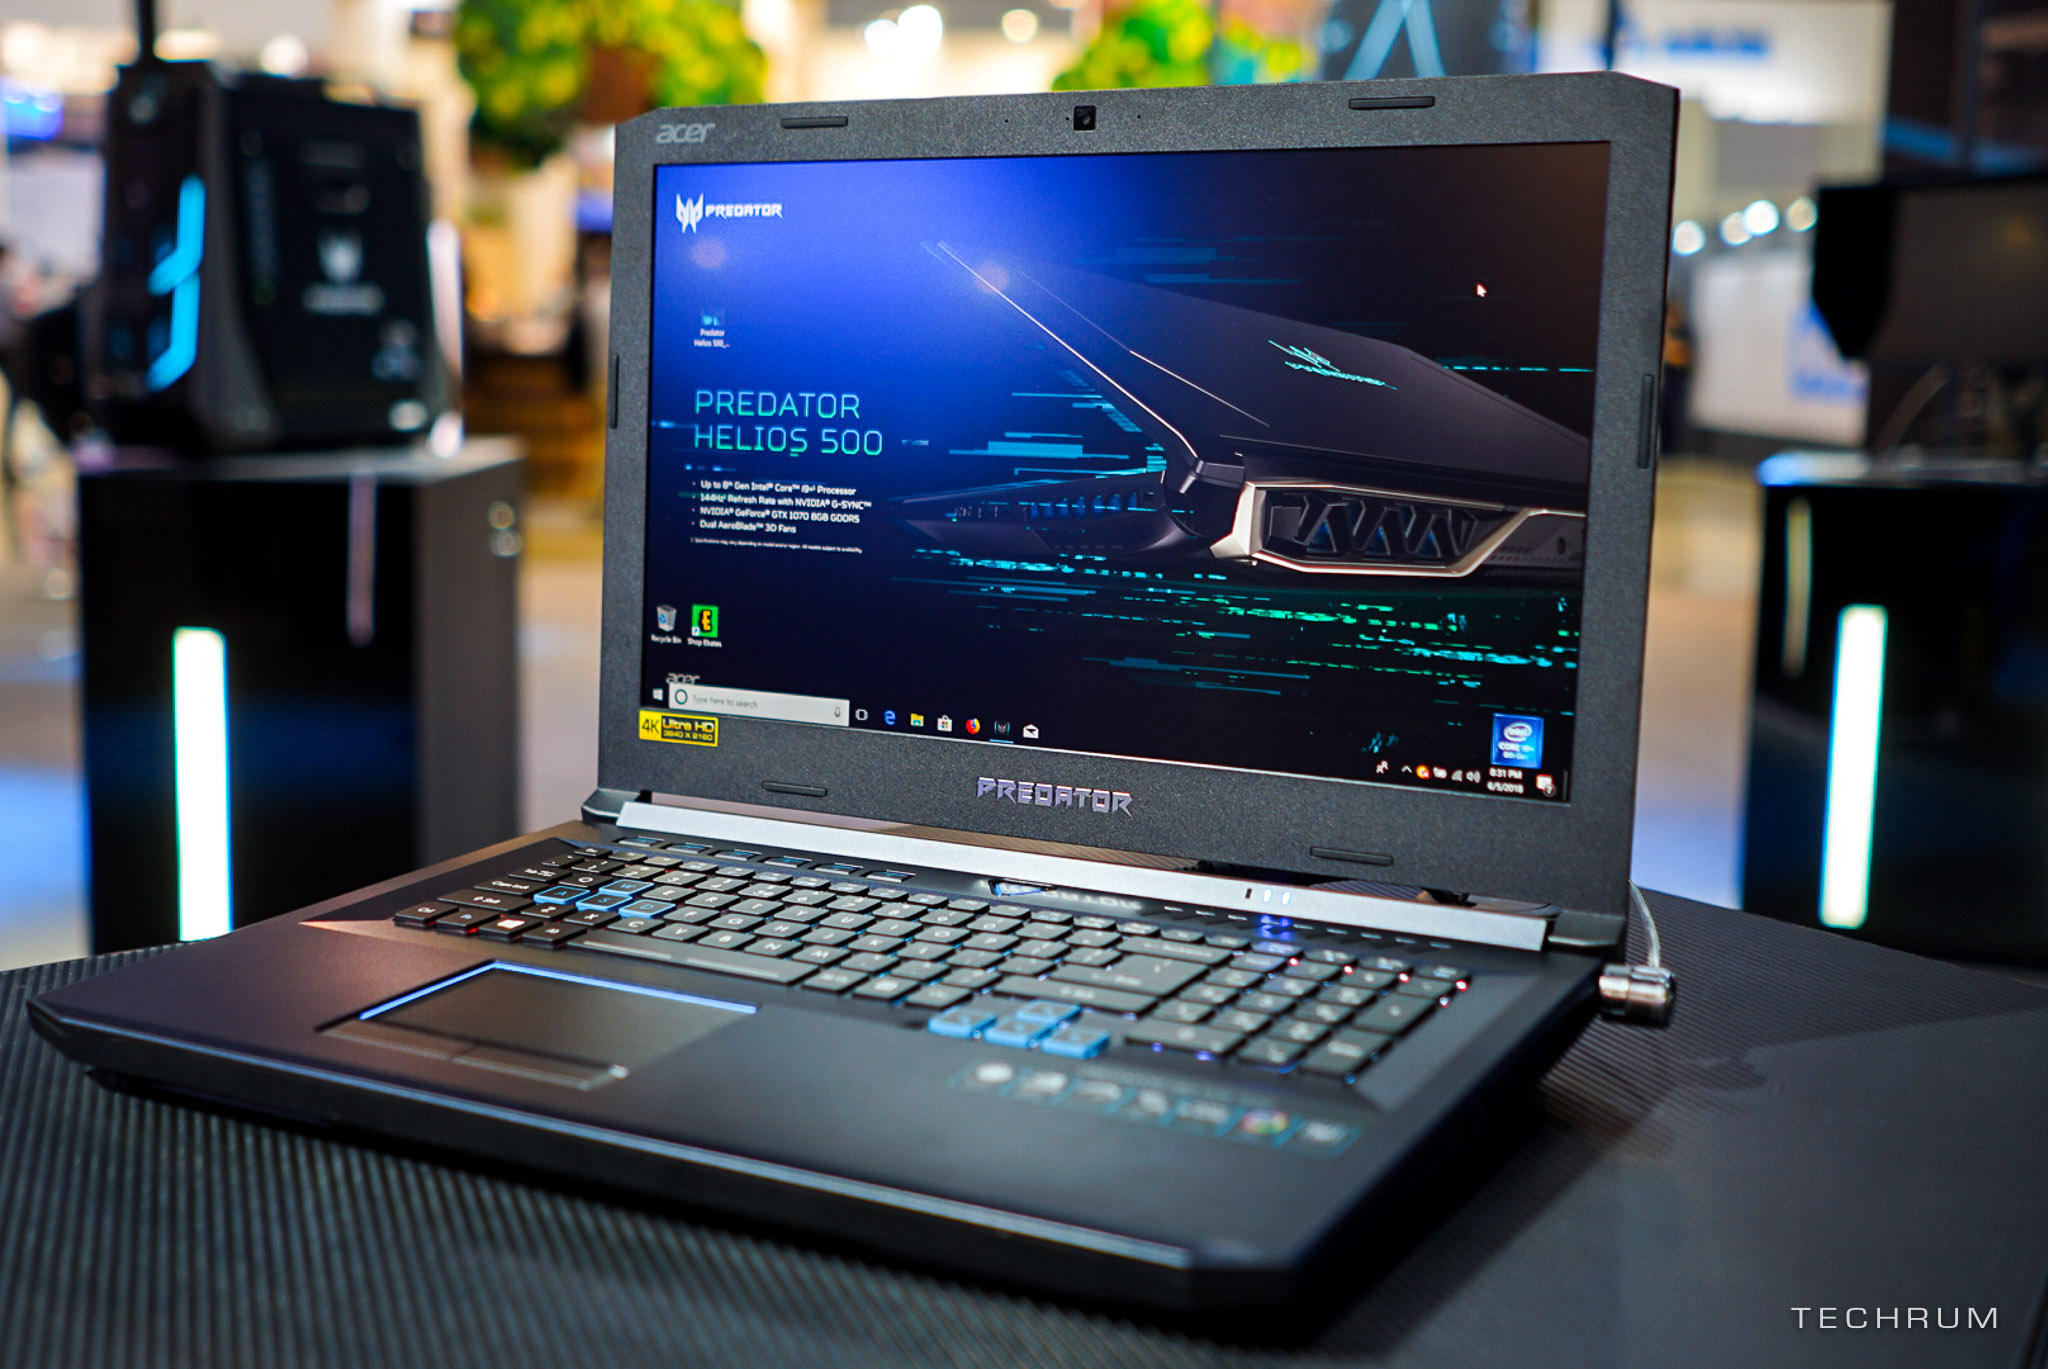 [Computex 2018] Cận cảnh bộ đôi gaming laptop
Predator Helios 500 & Helios 300 cấu hình khủng của
Acer